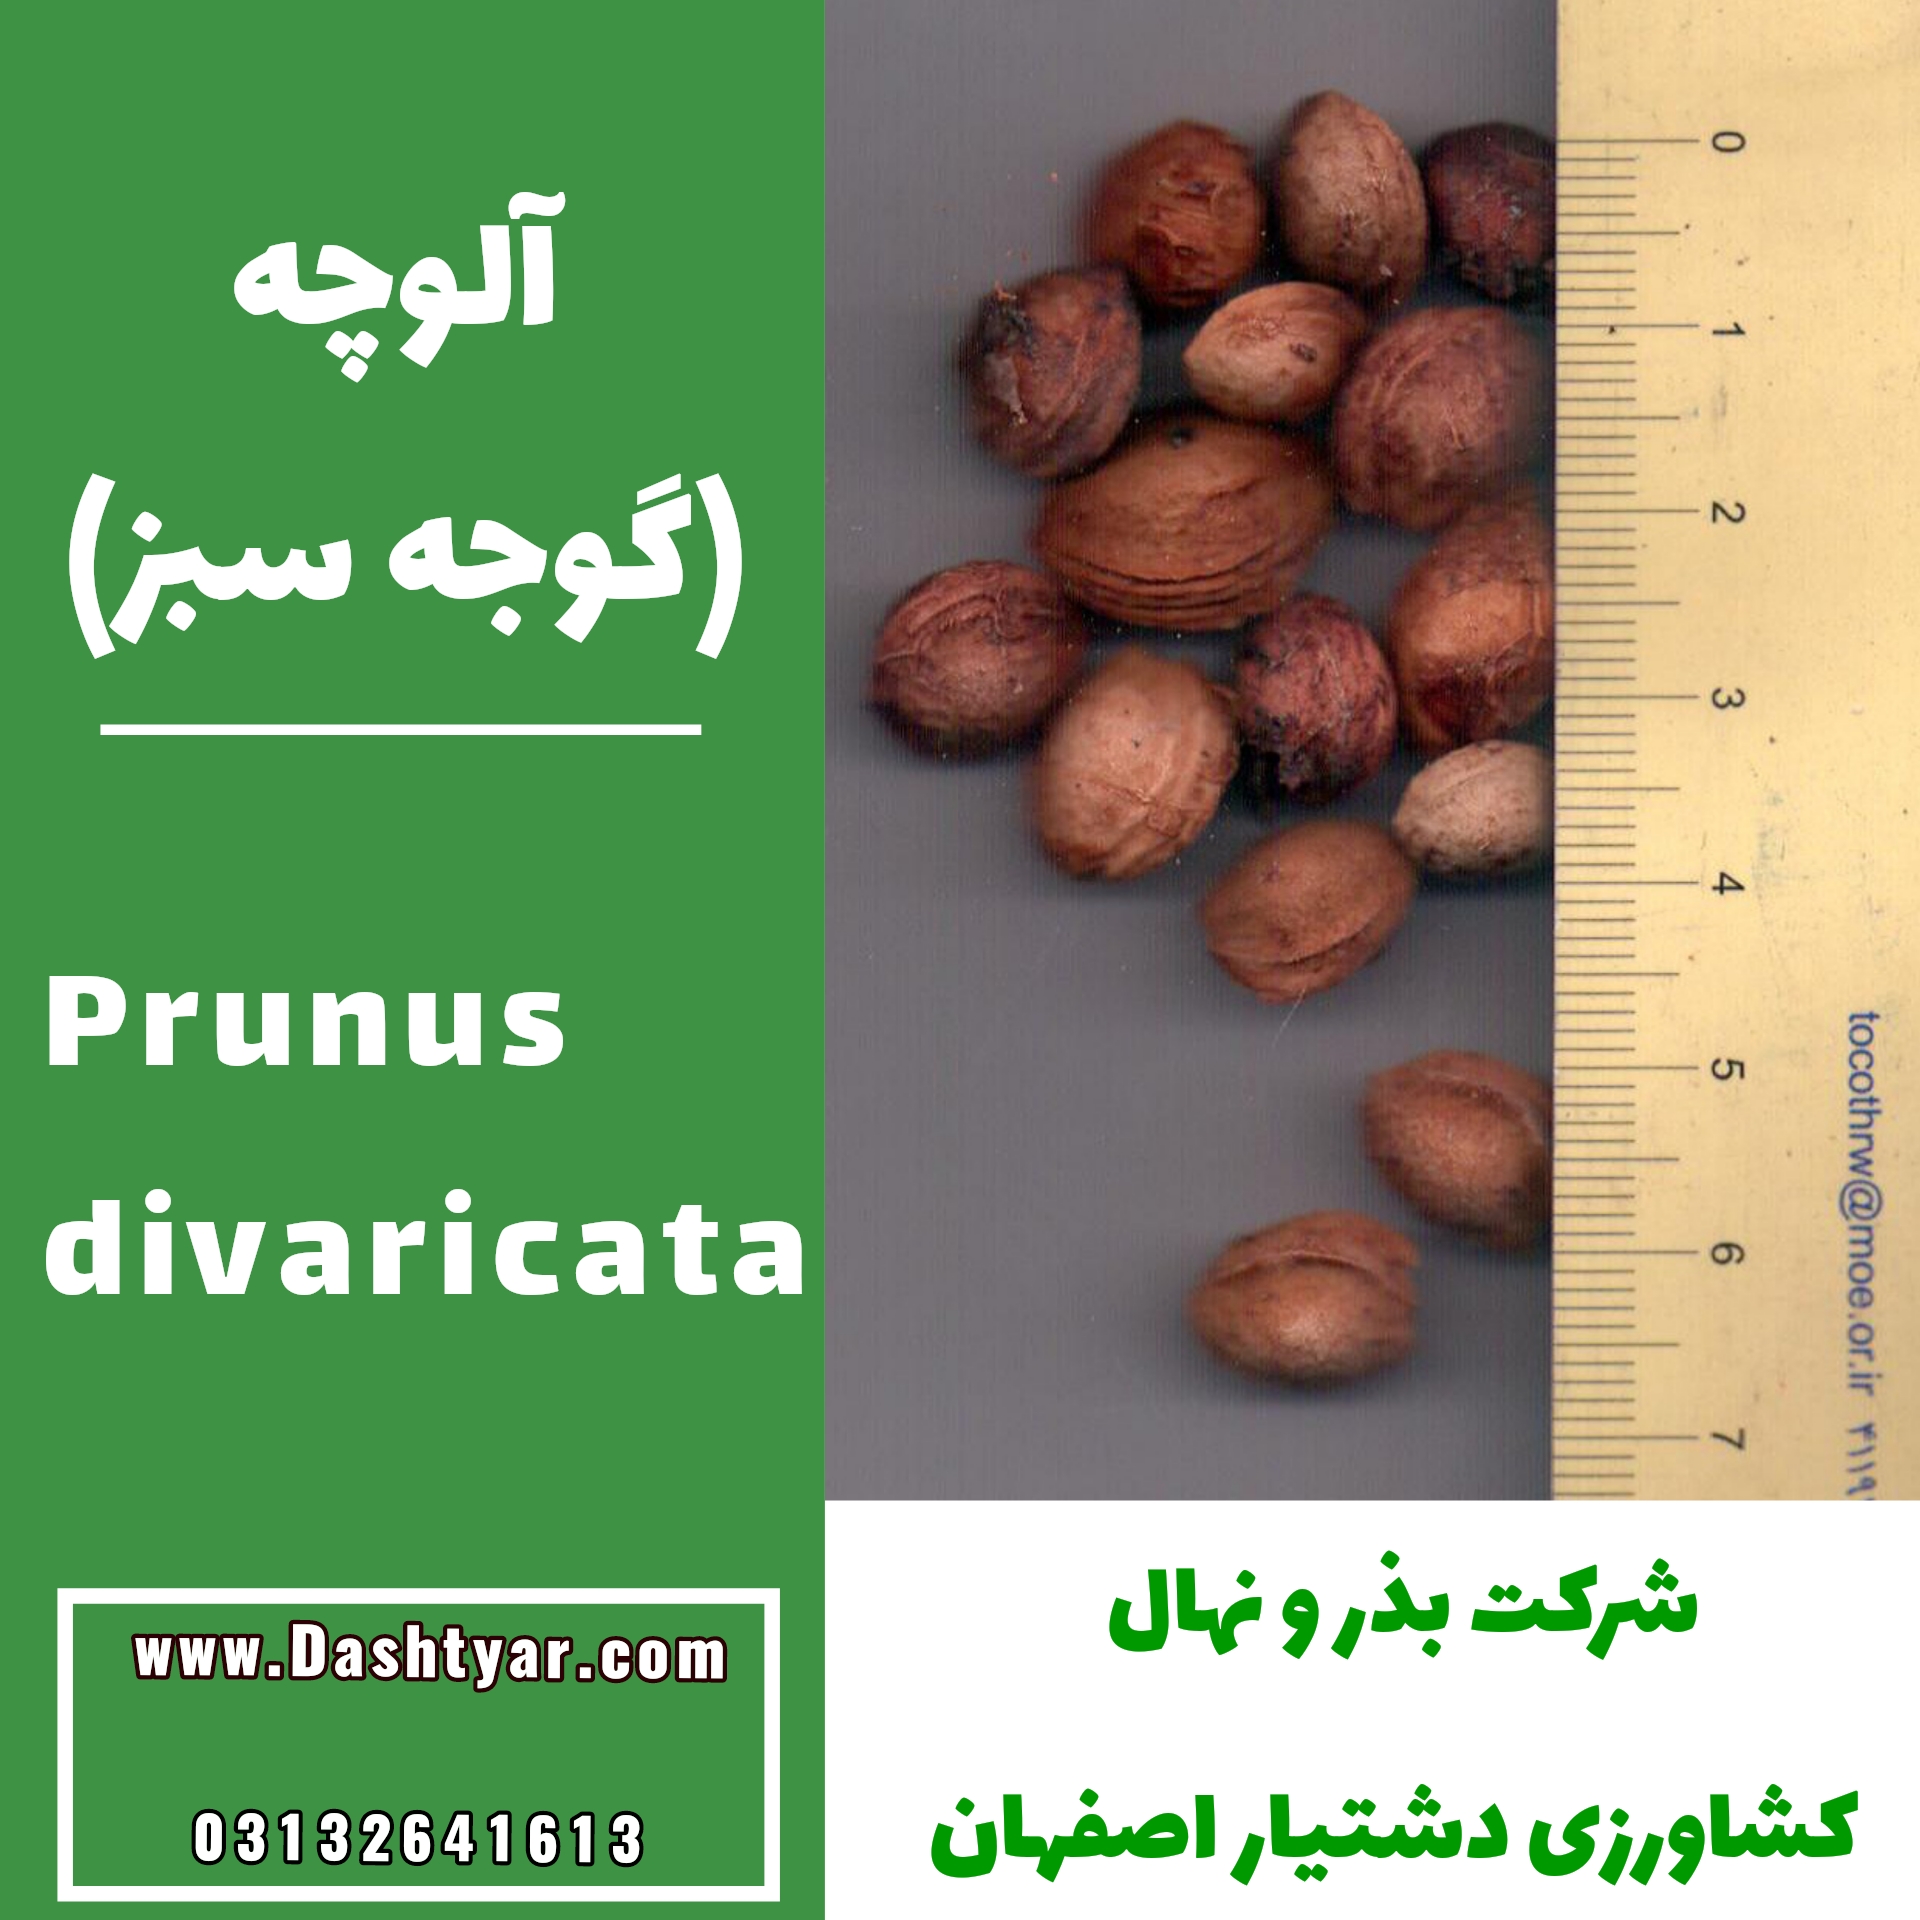 بذر آلوچه(گوجه سبز) prunus divaricata